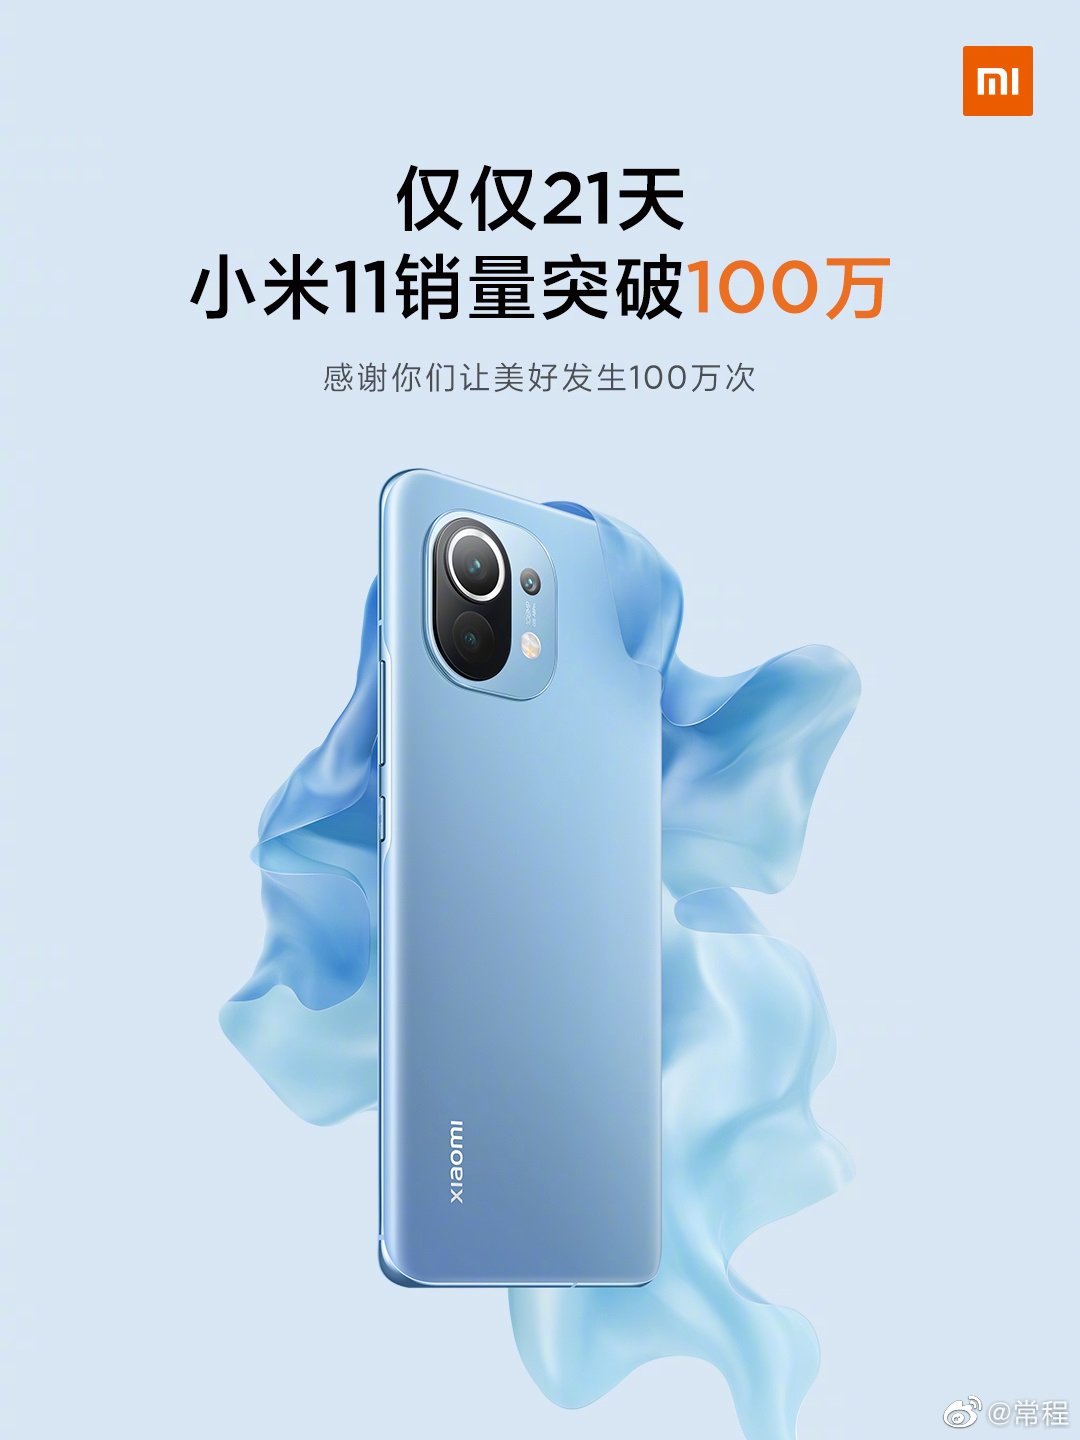 Prodano 11 milijonov enot Xiaomi Mi